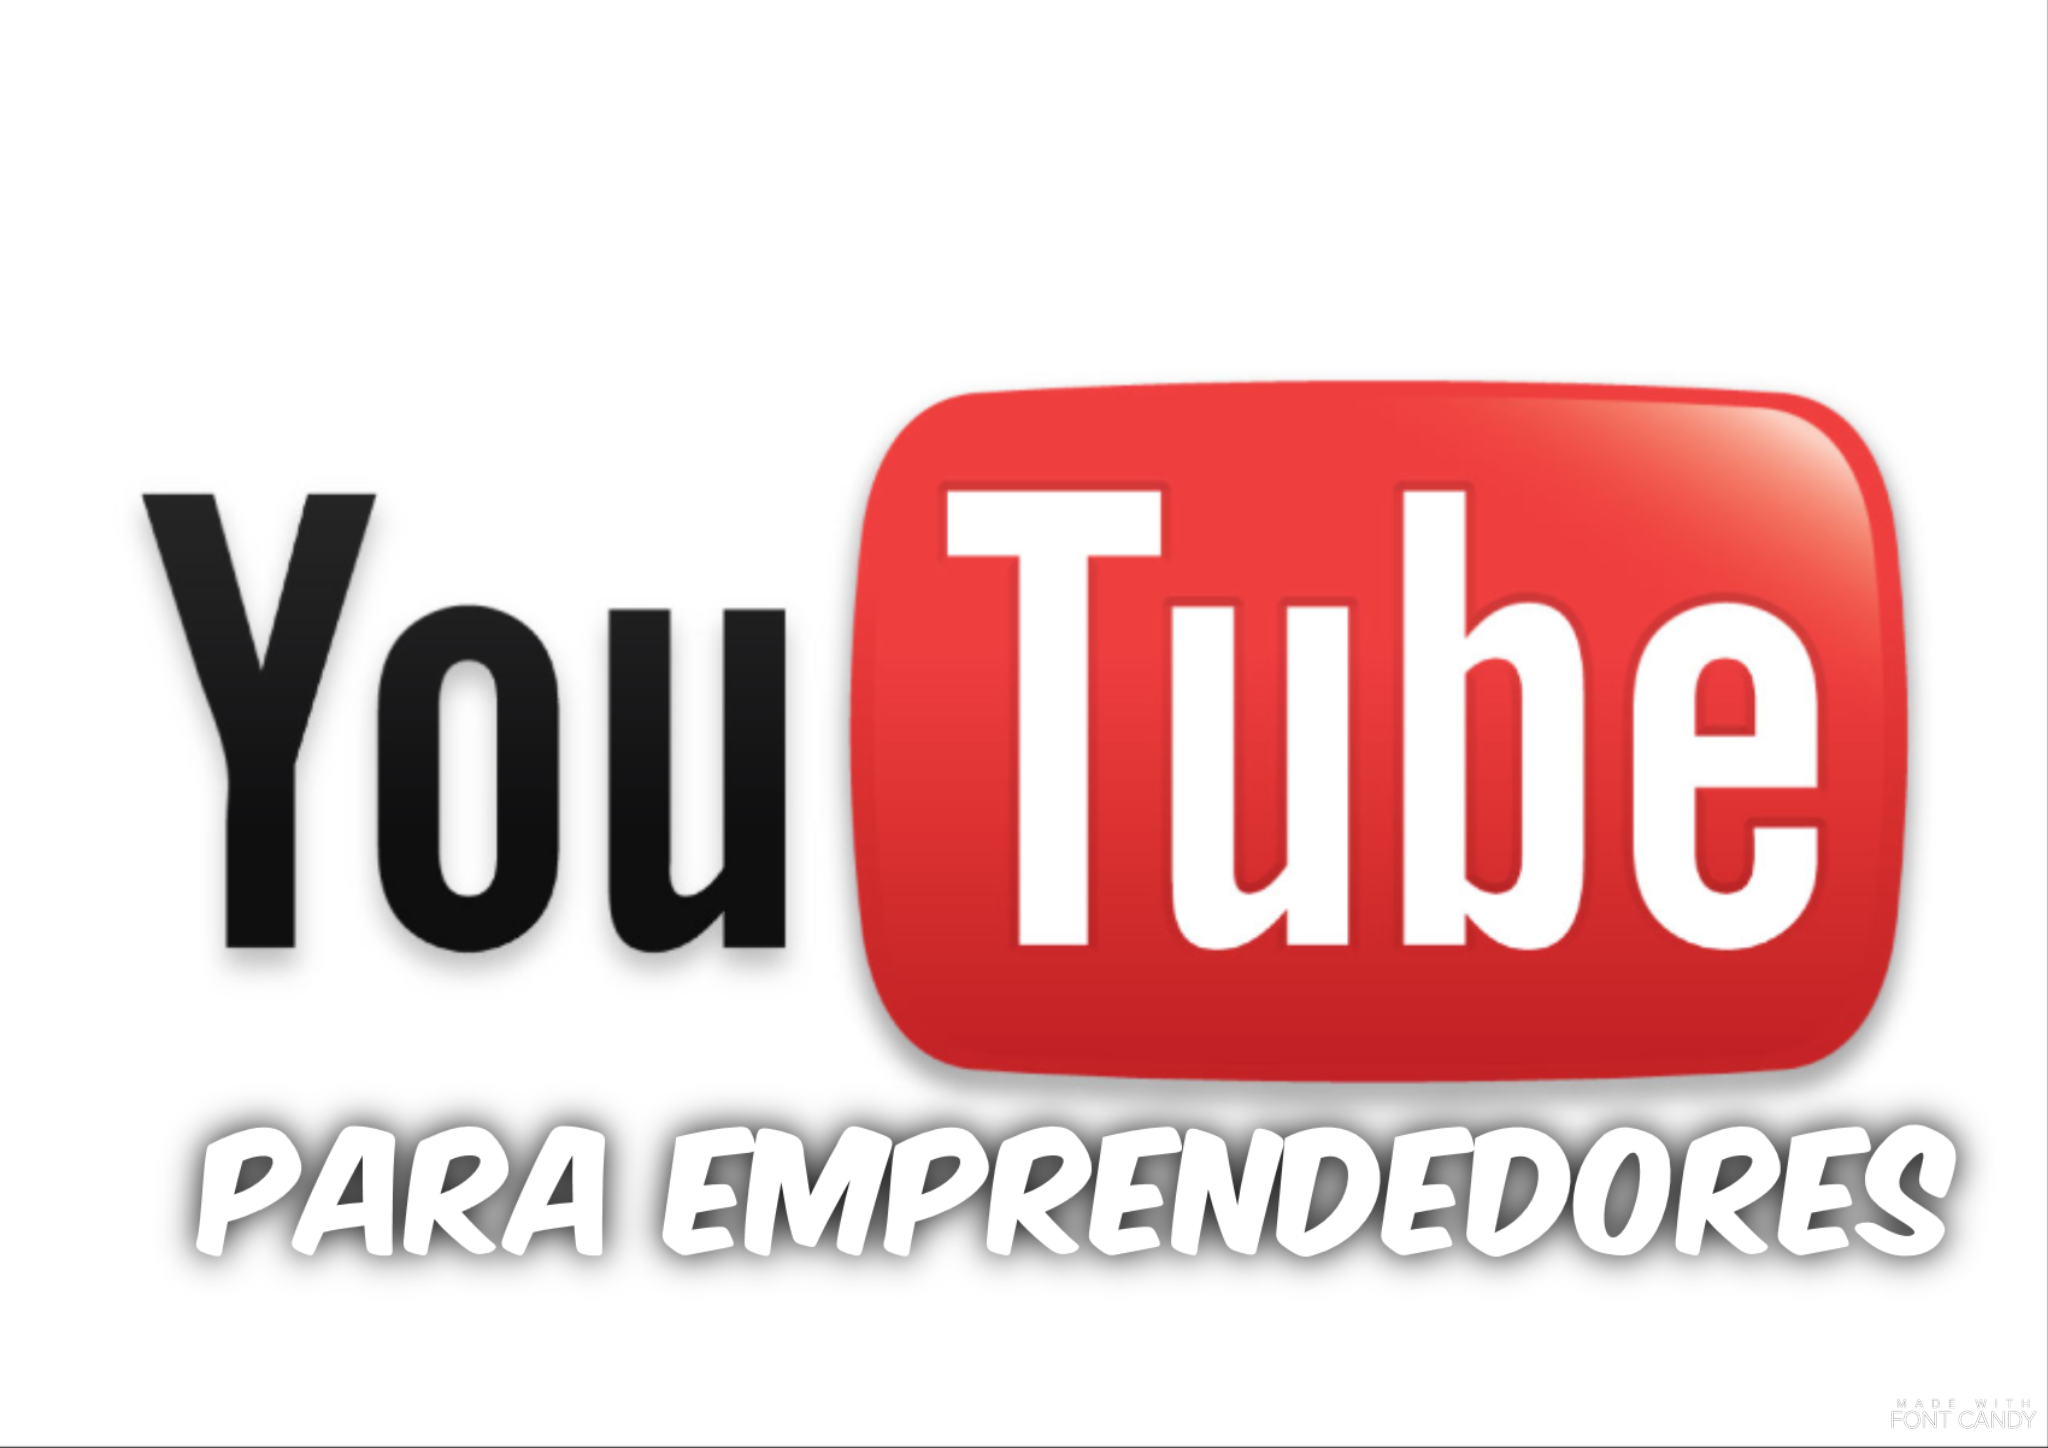 YouTube para emprendedores